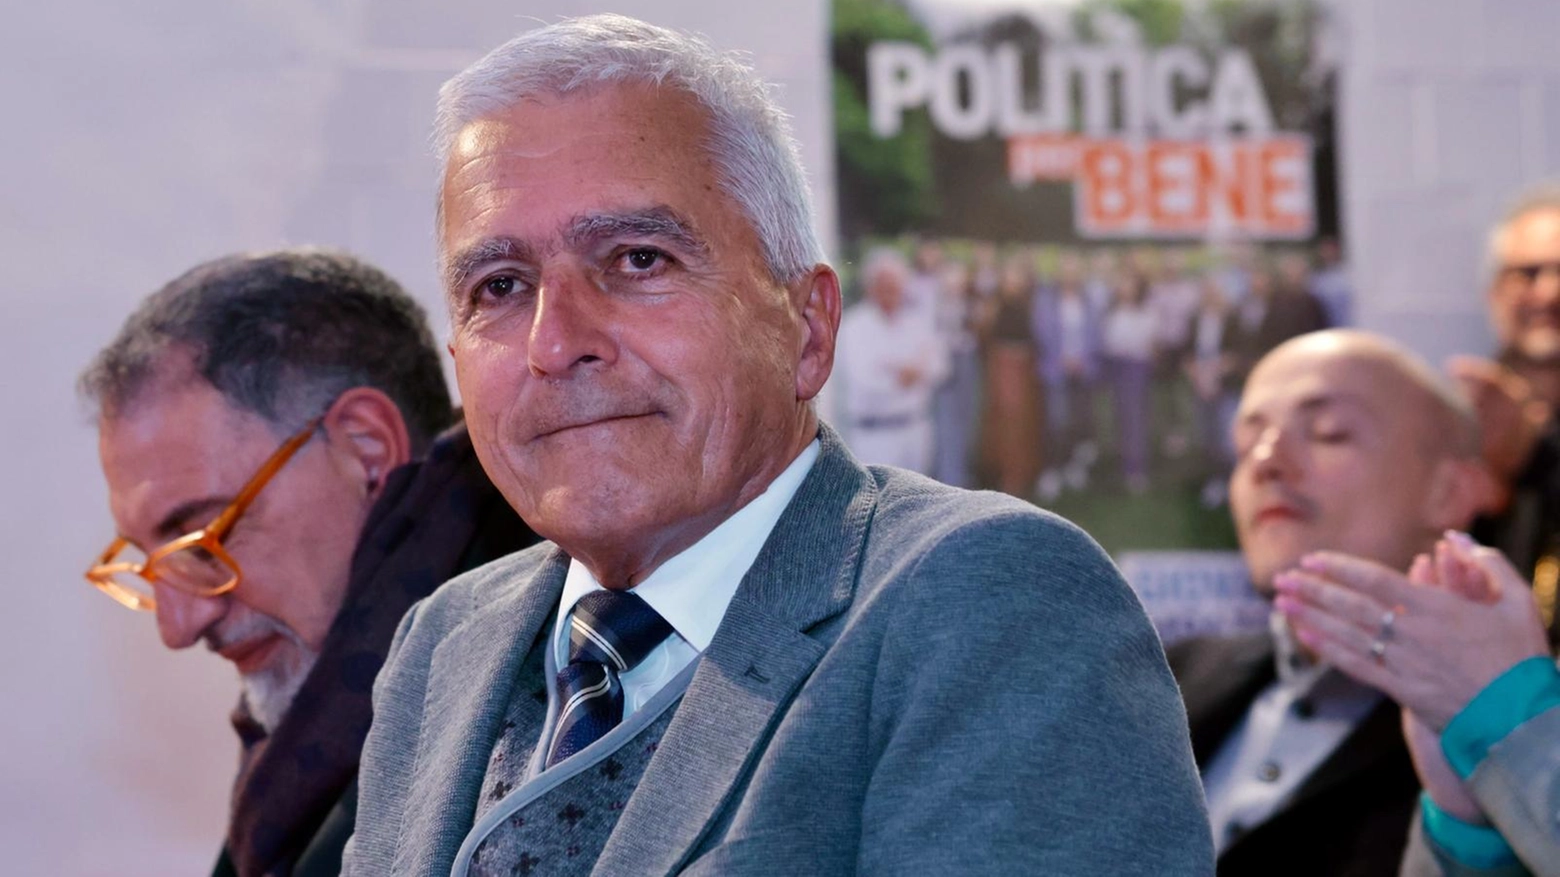 Giovanni Campatelli eletto sindaco a Certaldo